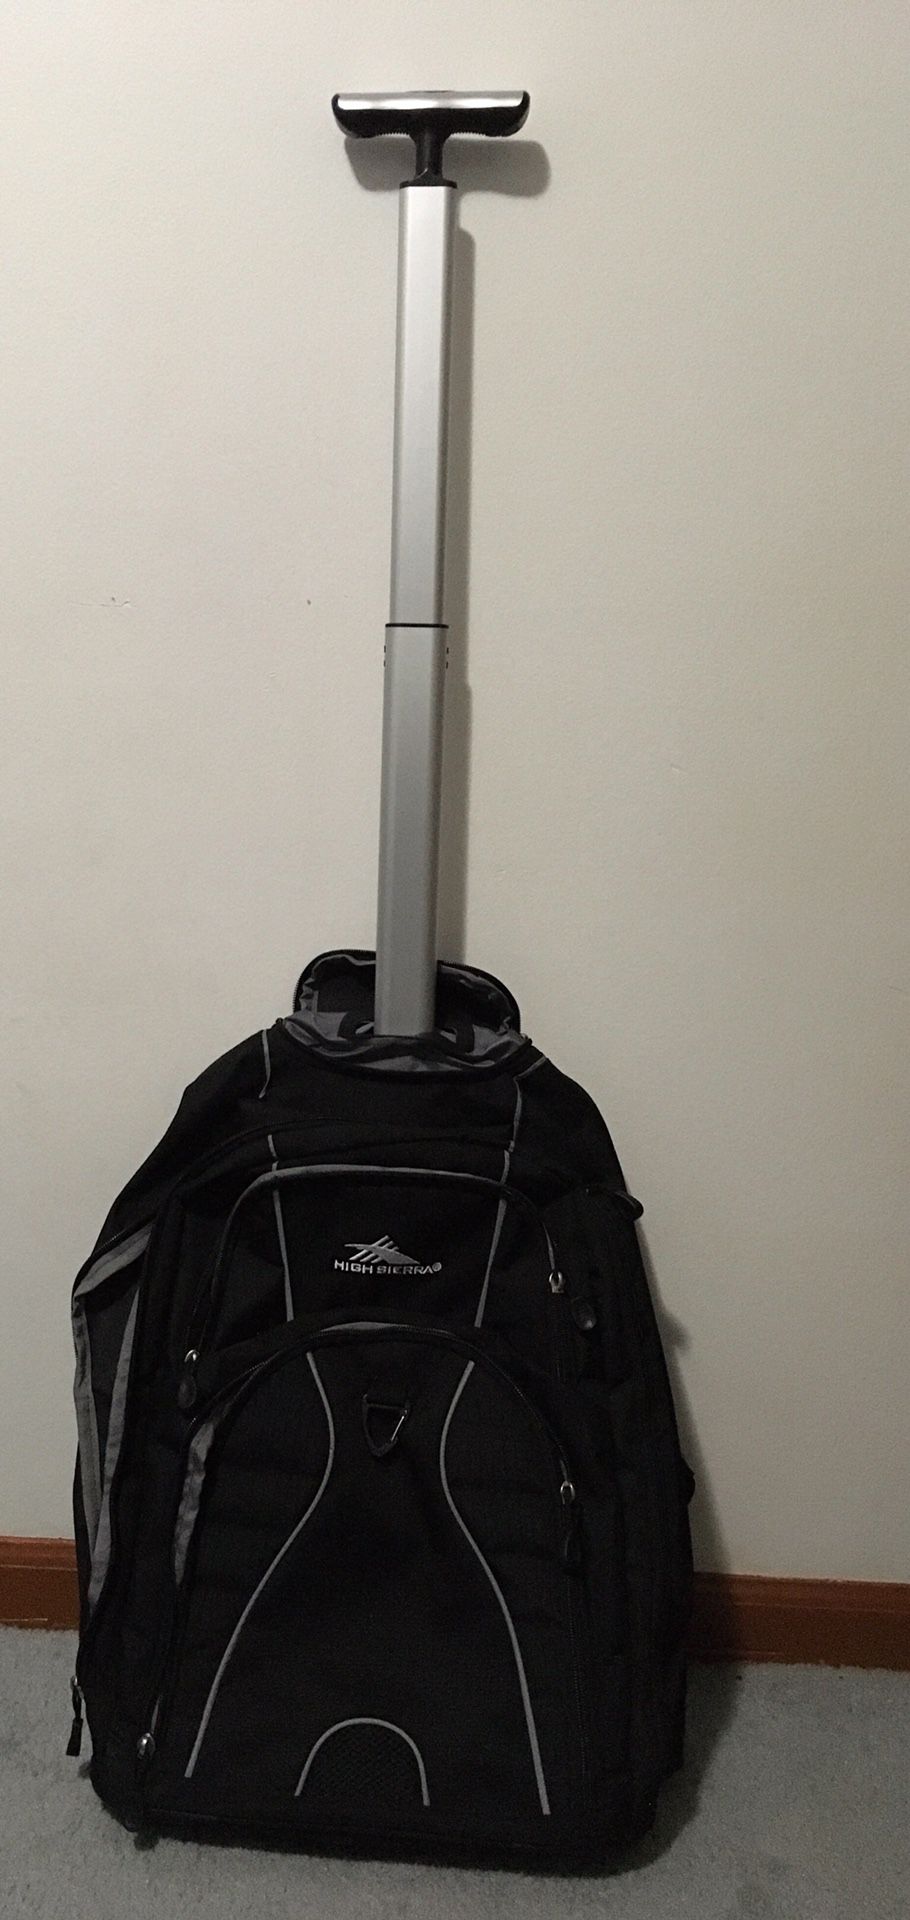 High sierra freewheel backpack